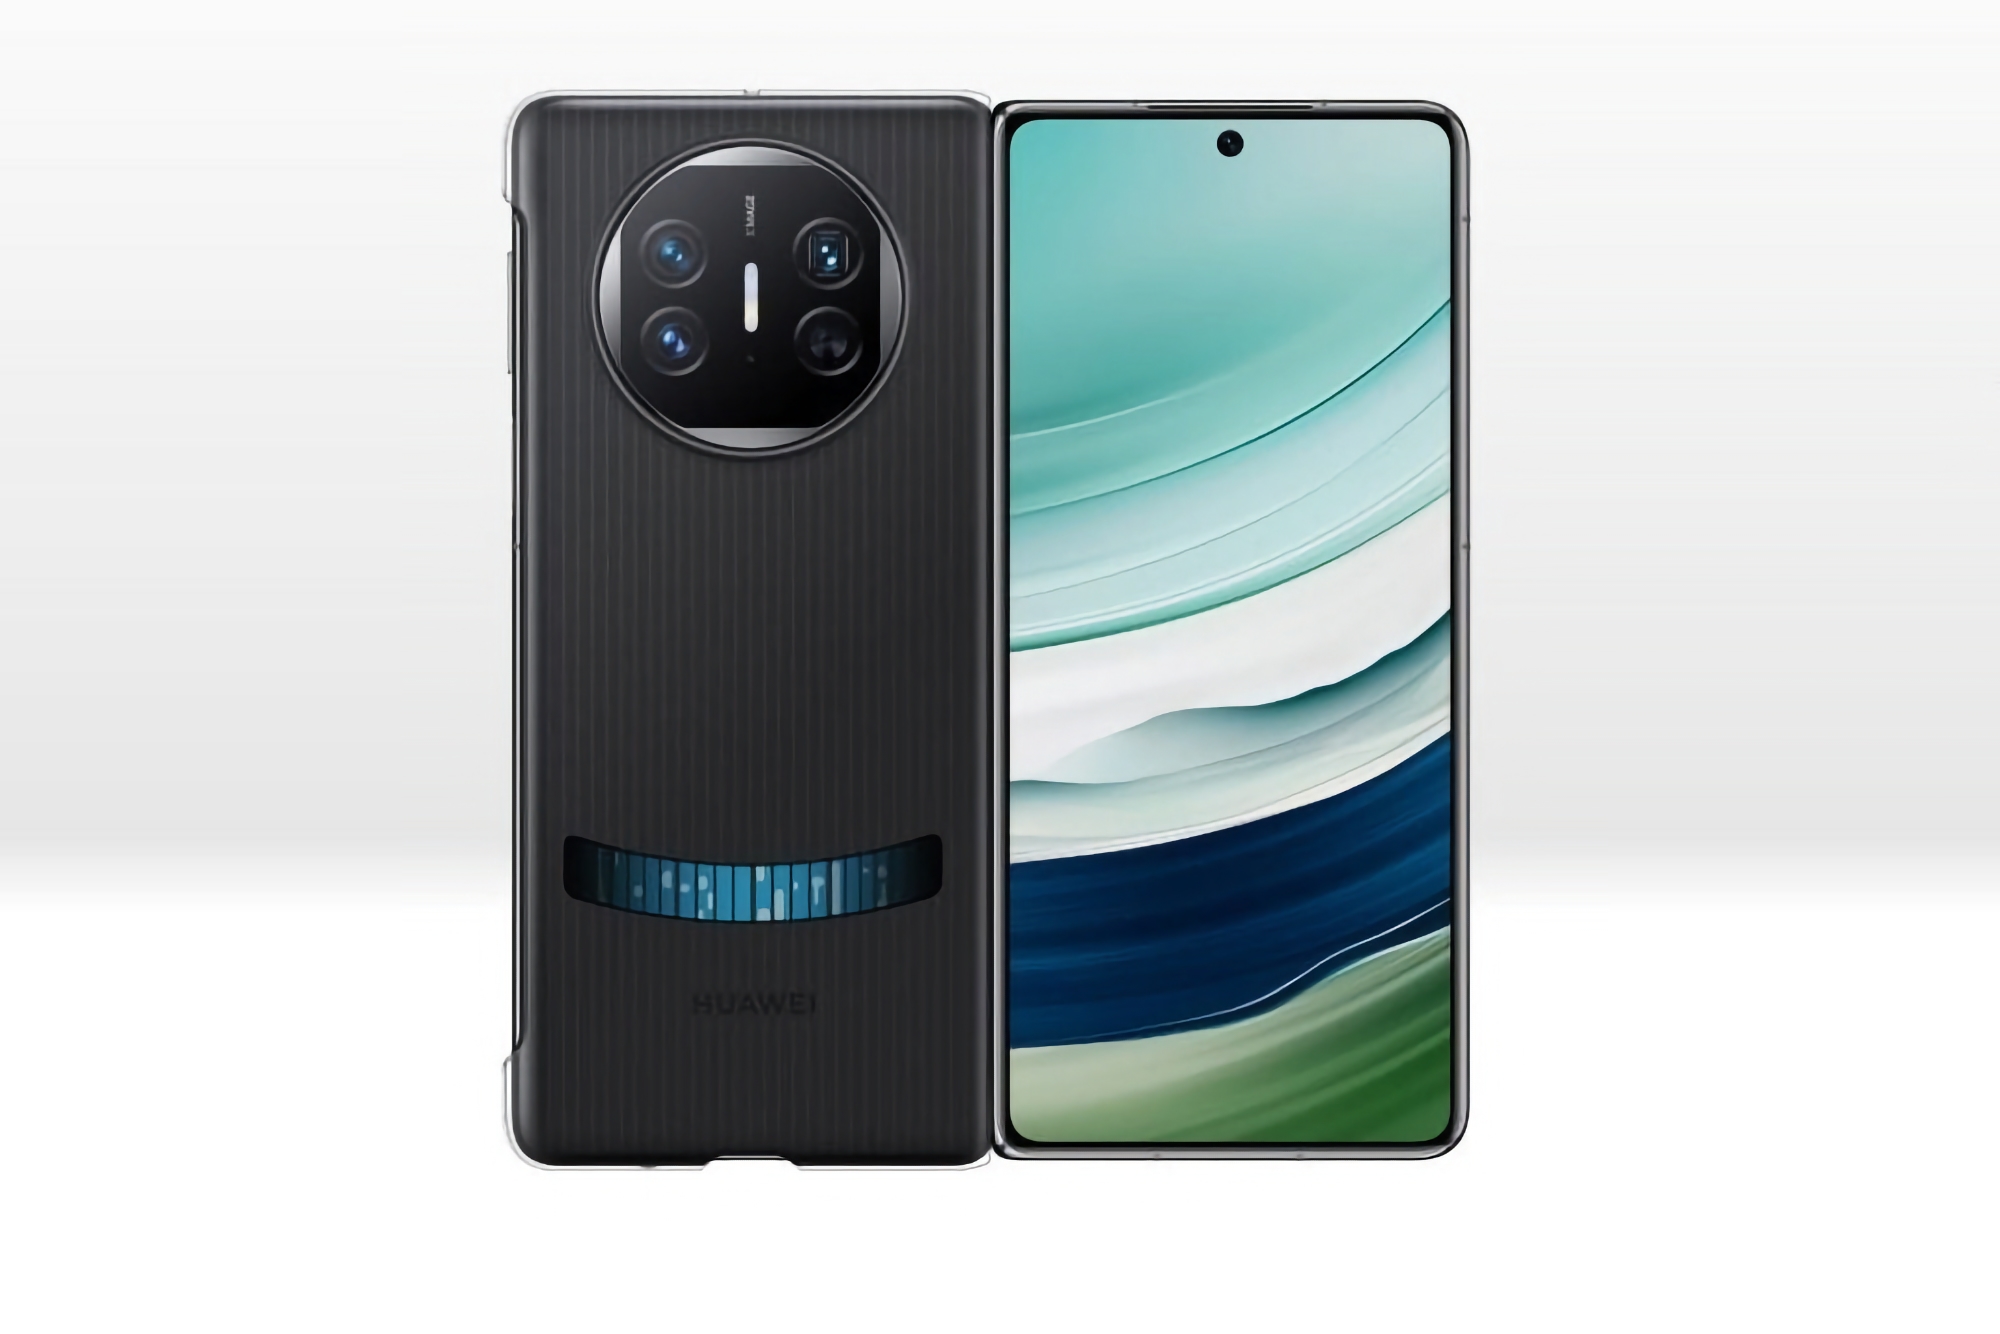 Come il Mate 60 Pro: Huawei ha presentato una custodia con sistema di raffreddamento a liquido per lo smartphone pieghevole Mate X5